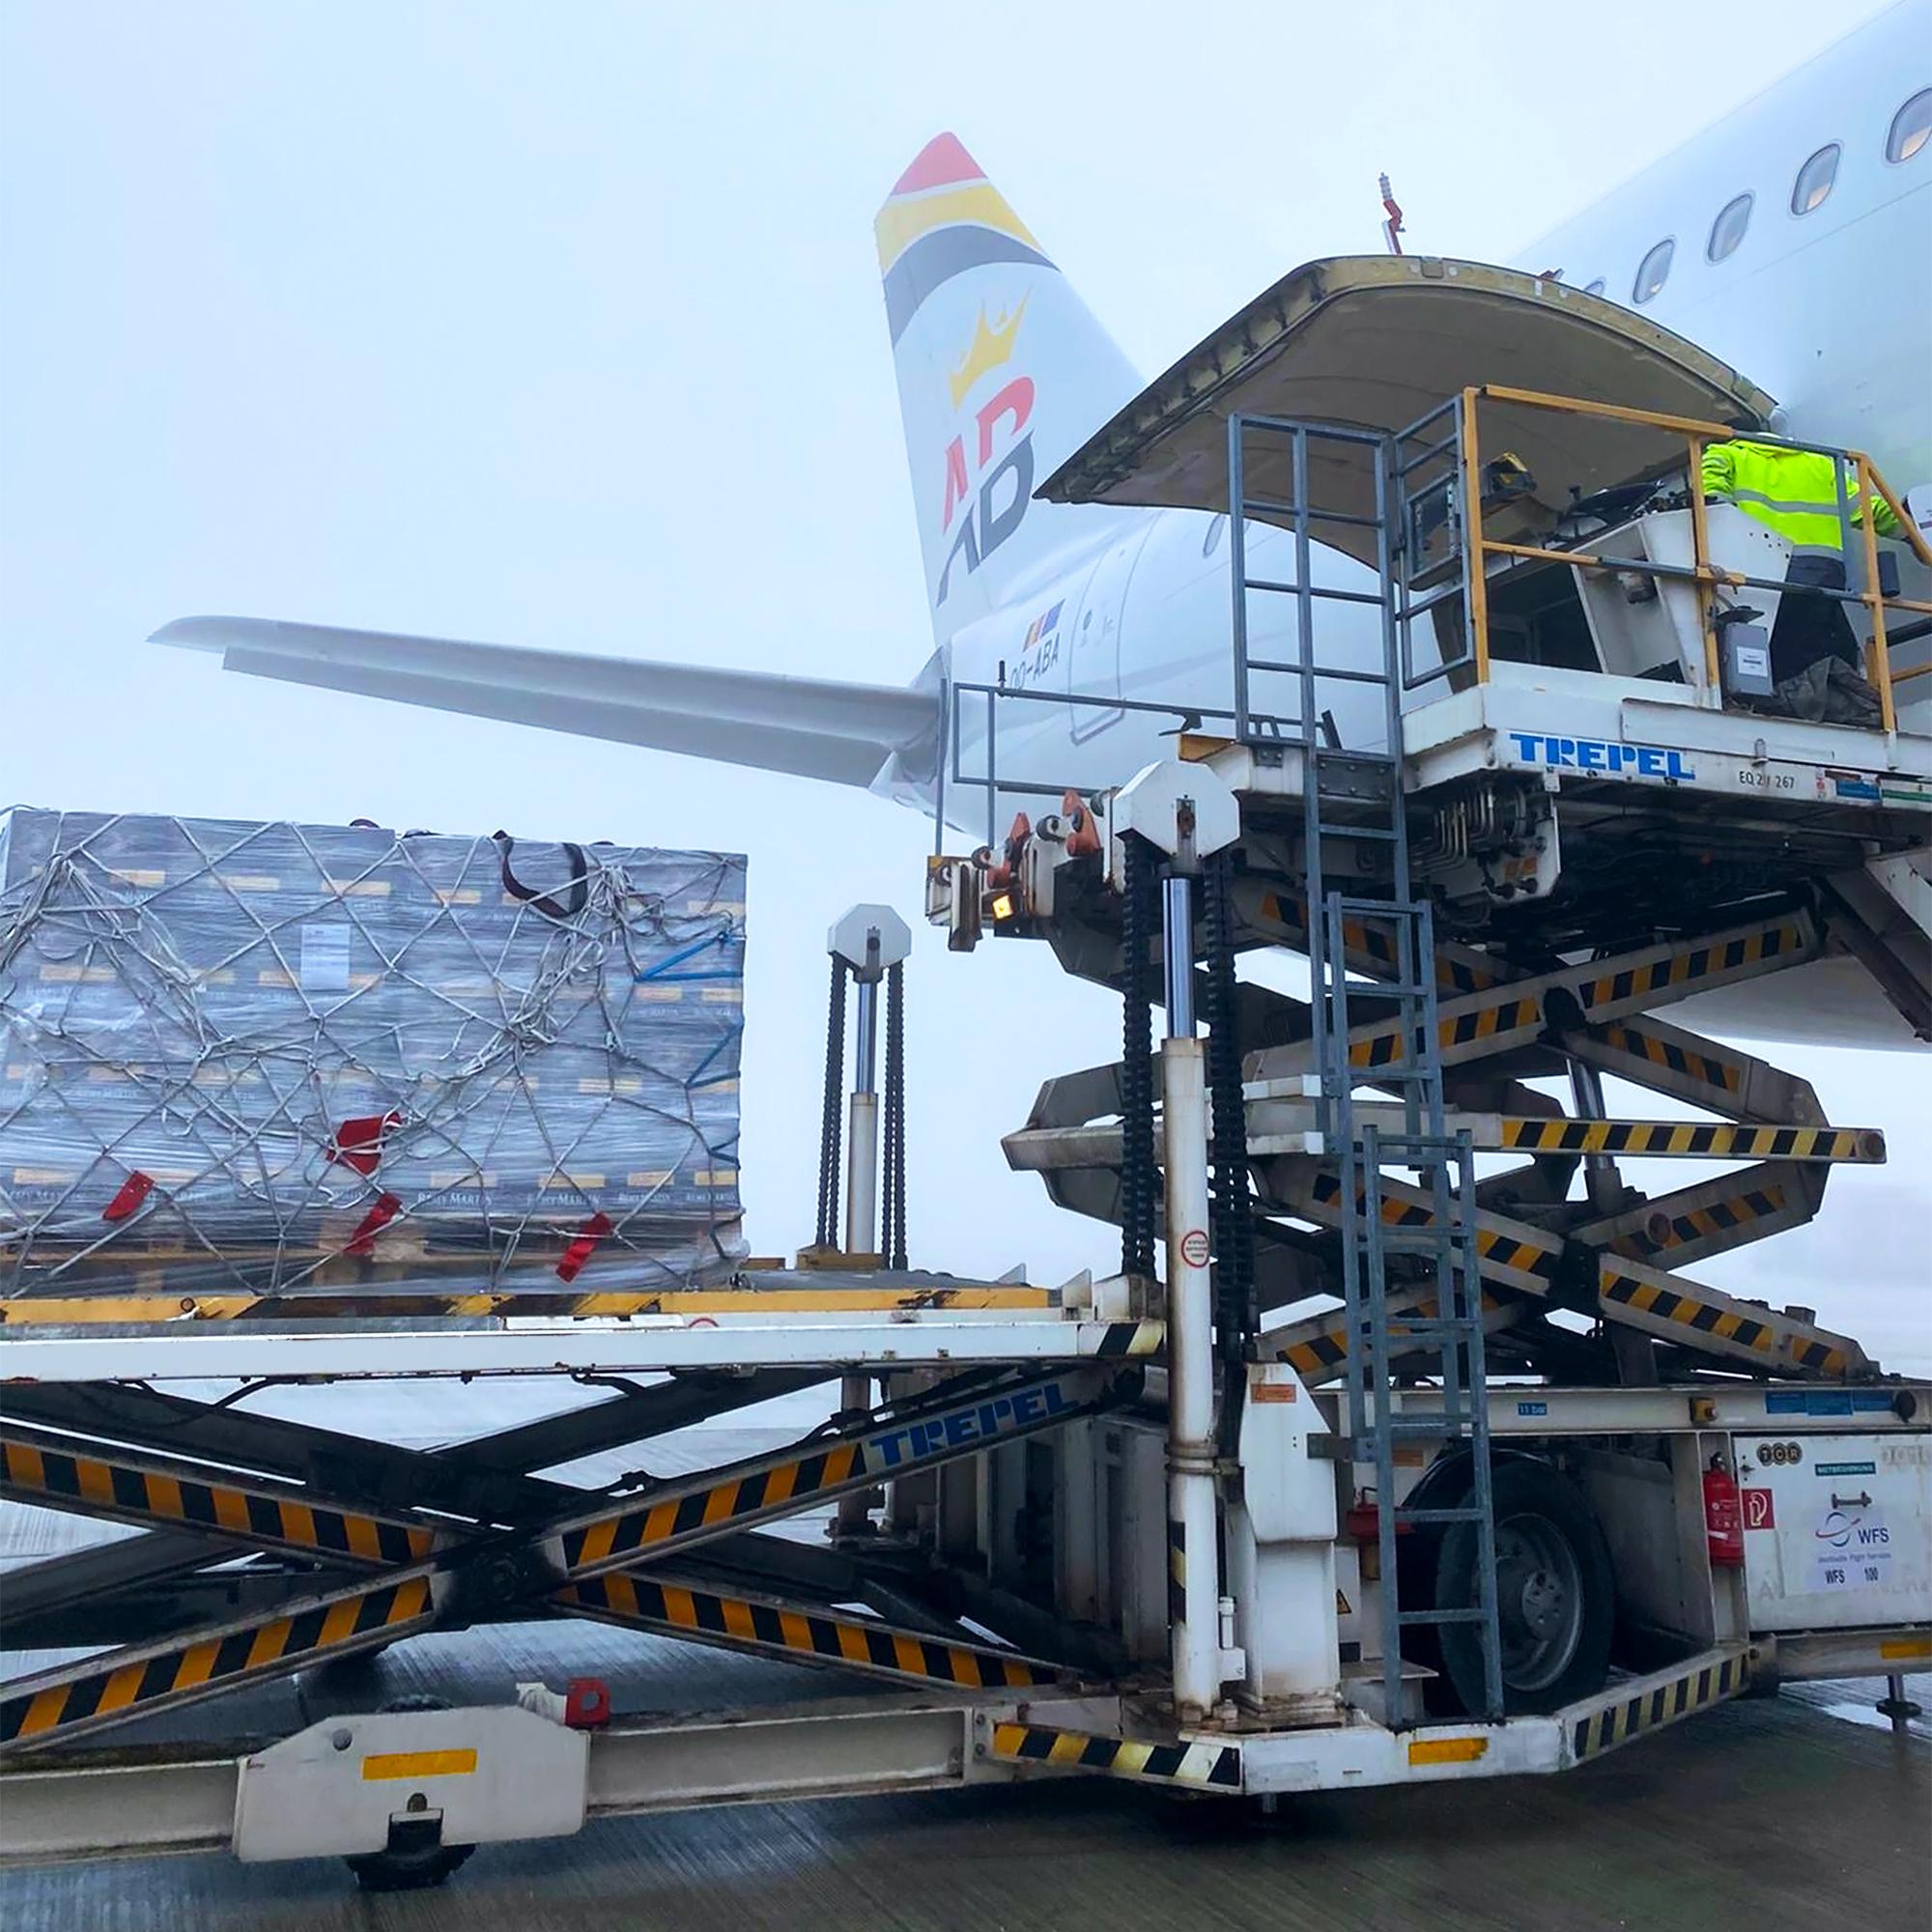 Air Belgium cargo